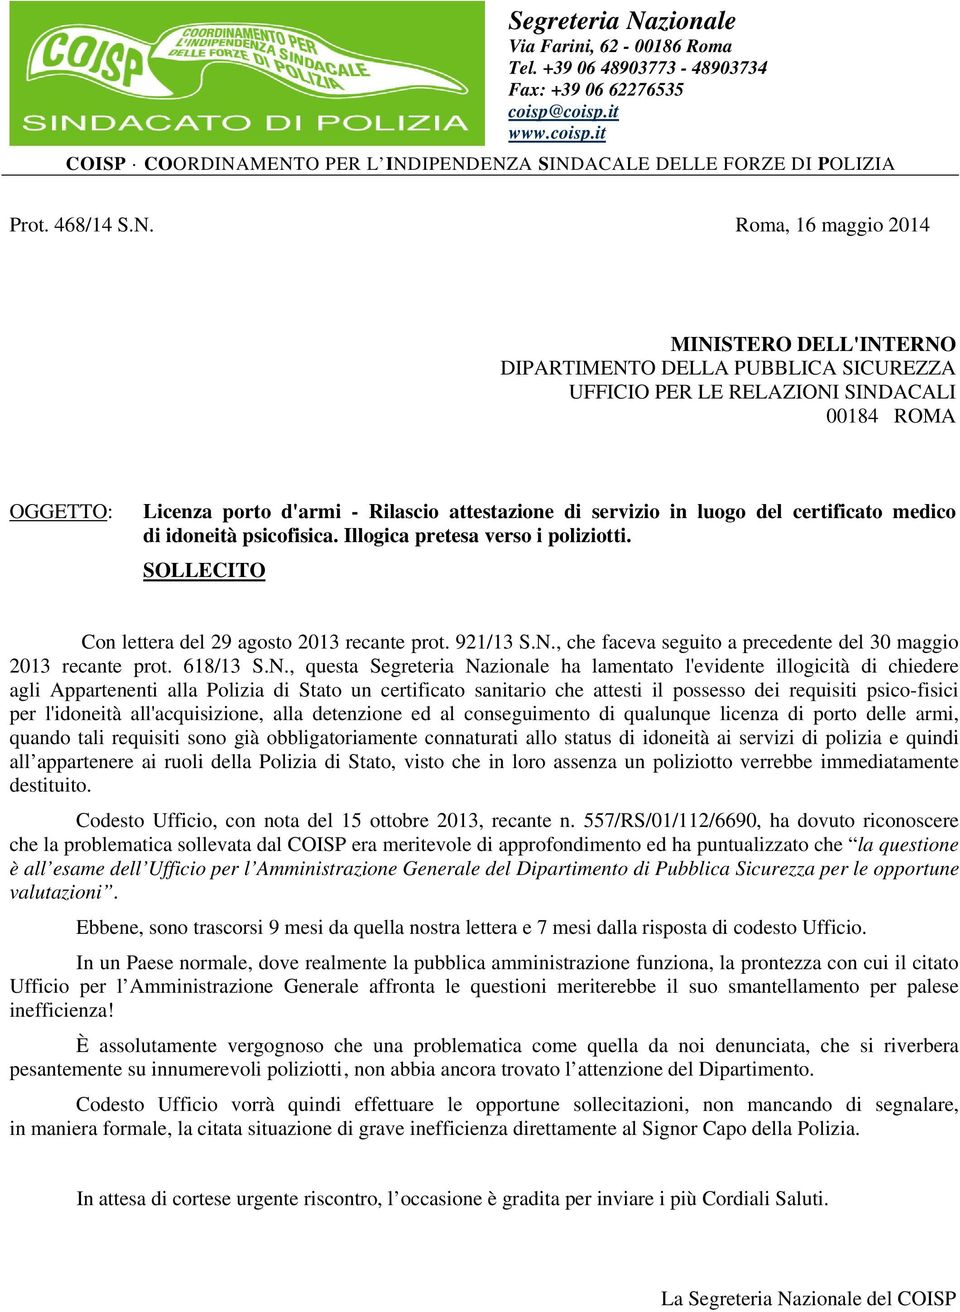 Roma, 16 maggio 2014 MINISTERO DELL'INTERNO DIPARTIMENTO DELLA PUBBLICA SICUREZZA UFFICIO PER LE RELAZIONI SINDACALI 00184 ROMA OGGETTO: Licenza porto d'armi - Rilascio attestazione di servizio in